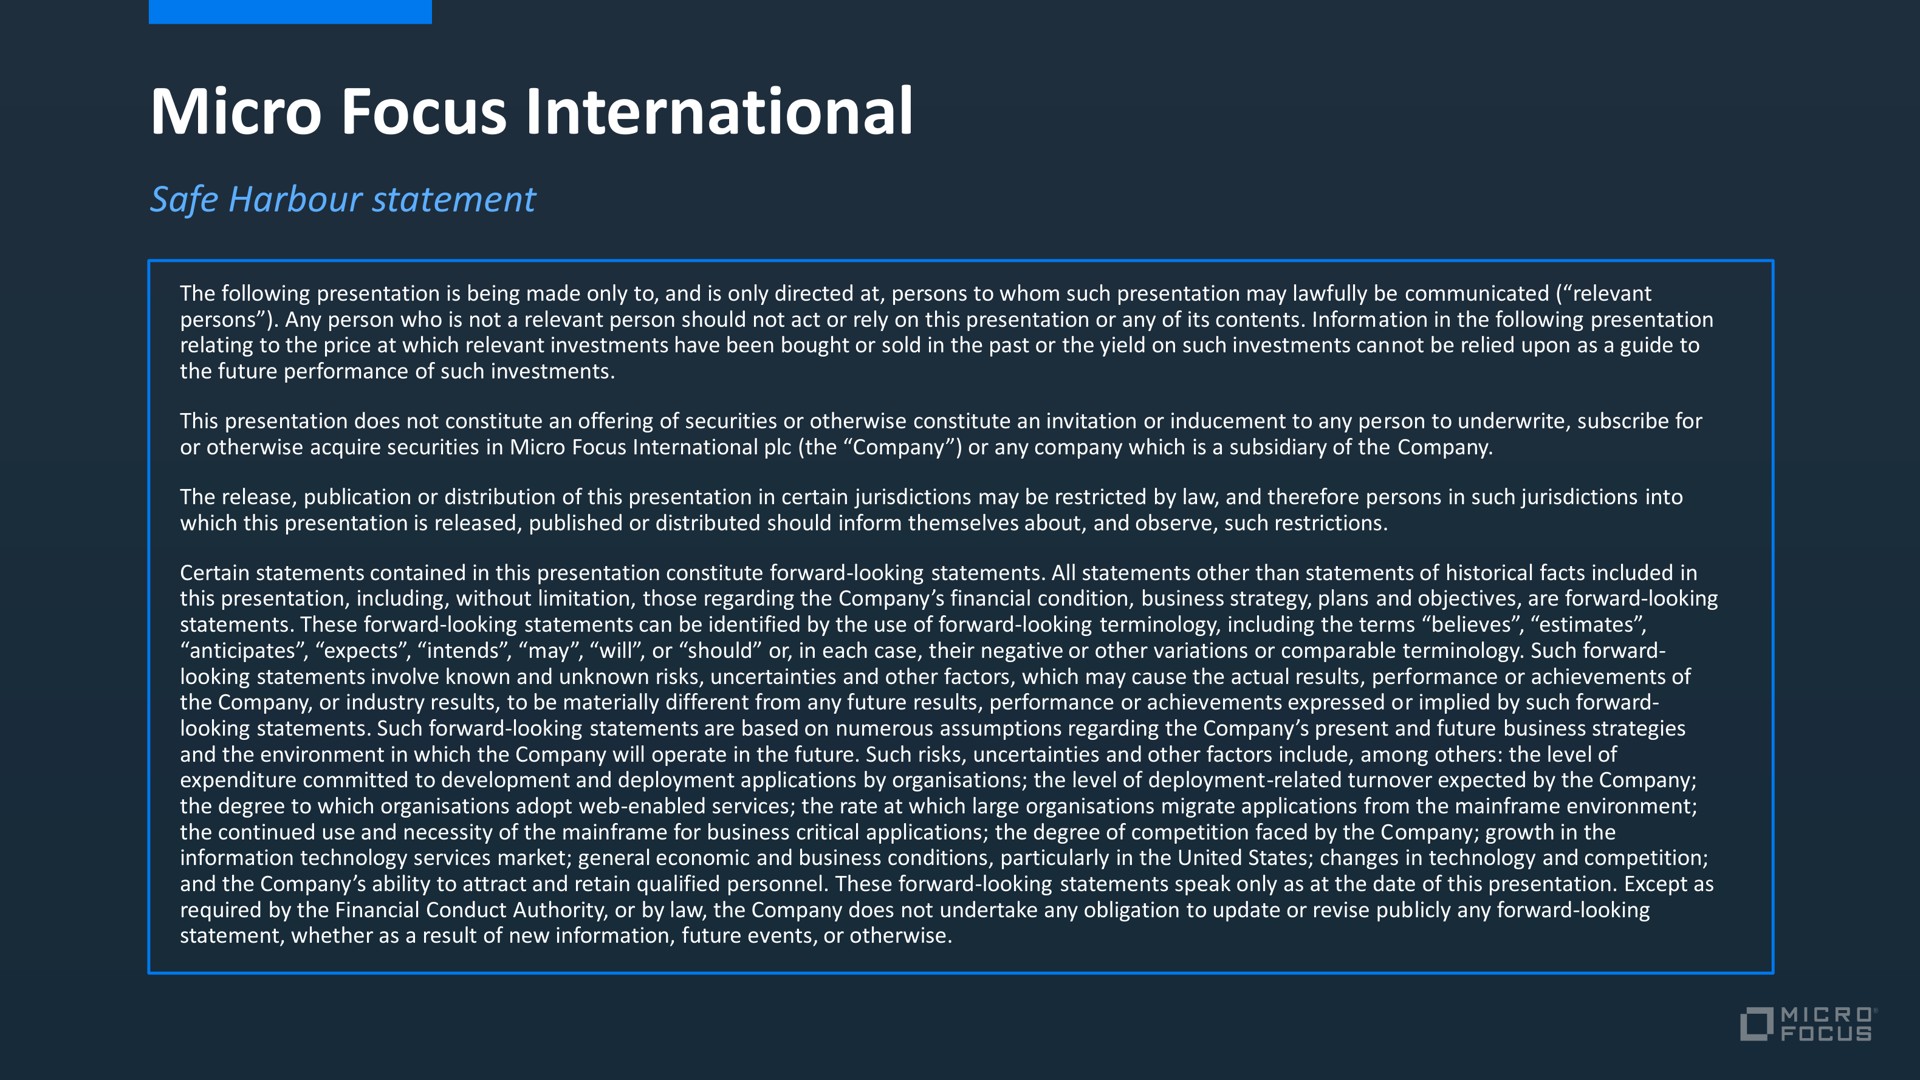 micro focus international | Micro Focus